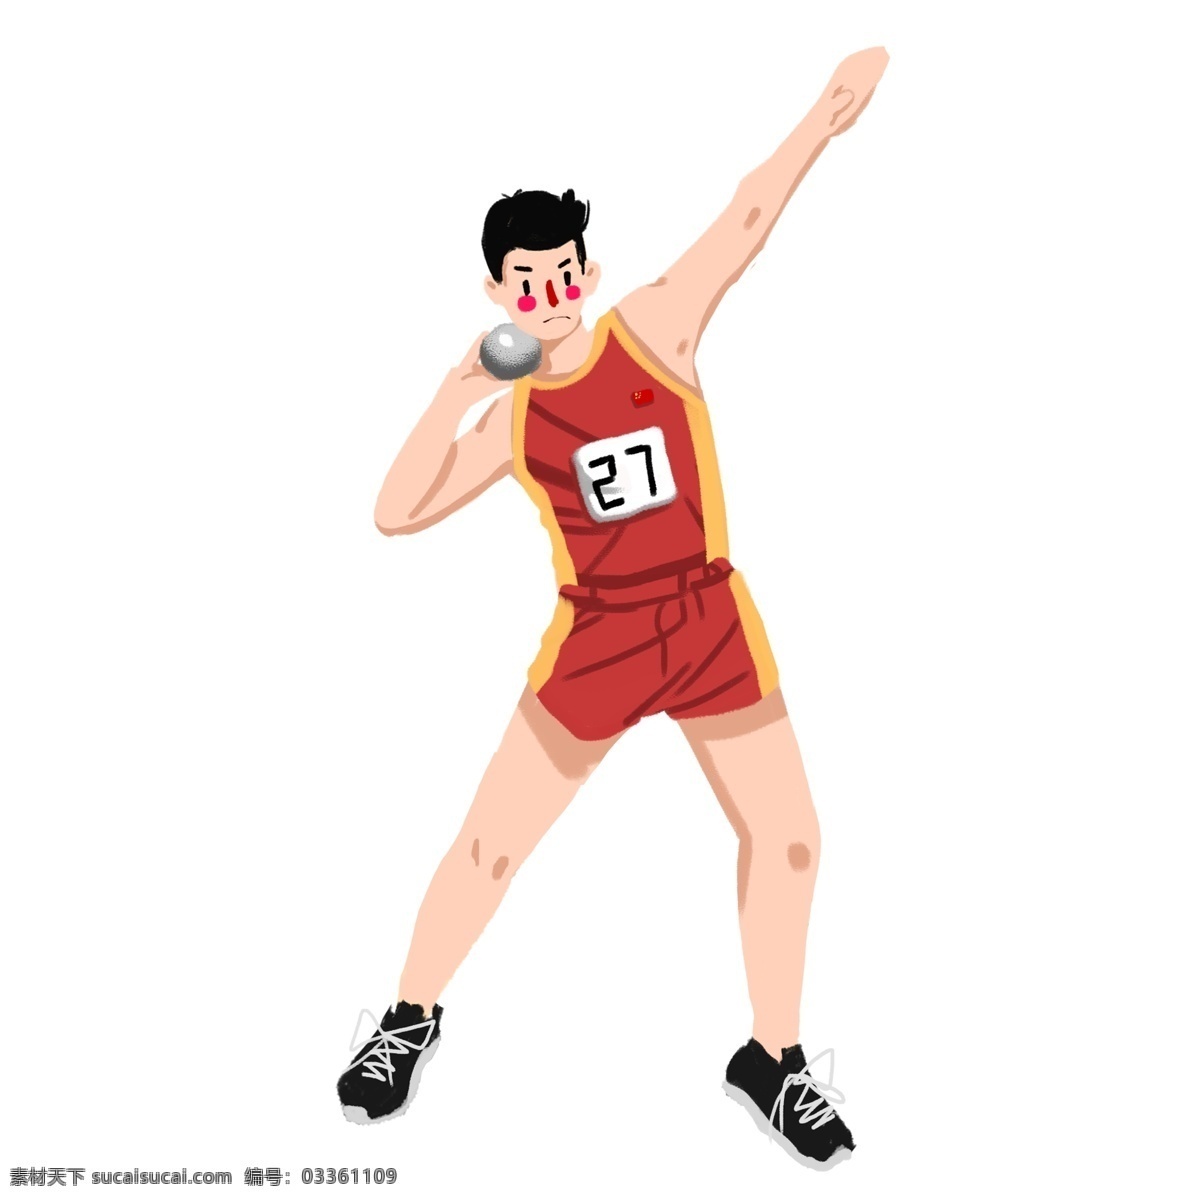 运动会 奥运会 项目 男子 铅球 比赛 奥运项目 竞技 重量 男子铅球比赛 运动员 红色 体育项目 健身 锻炼 练习 卡通人物 手绘 可爱